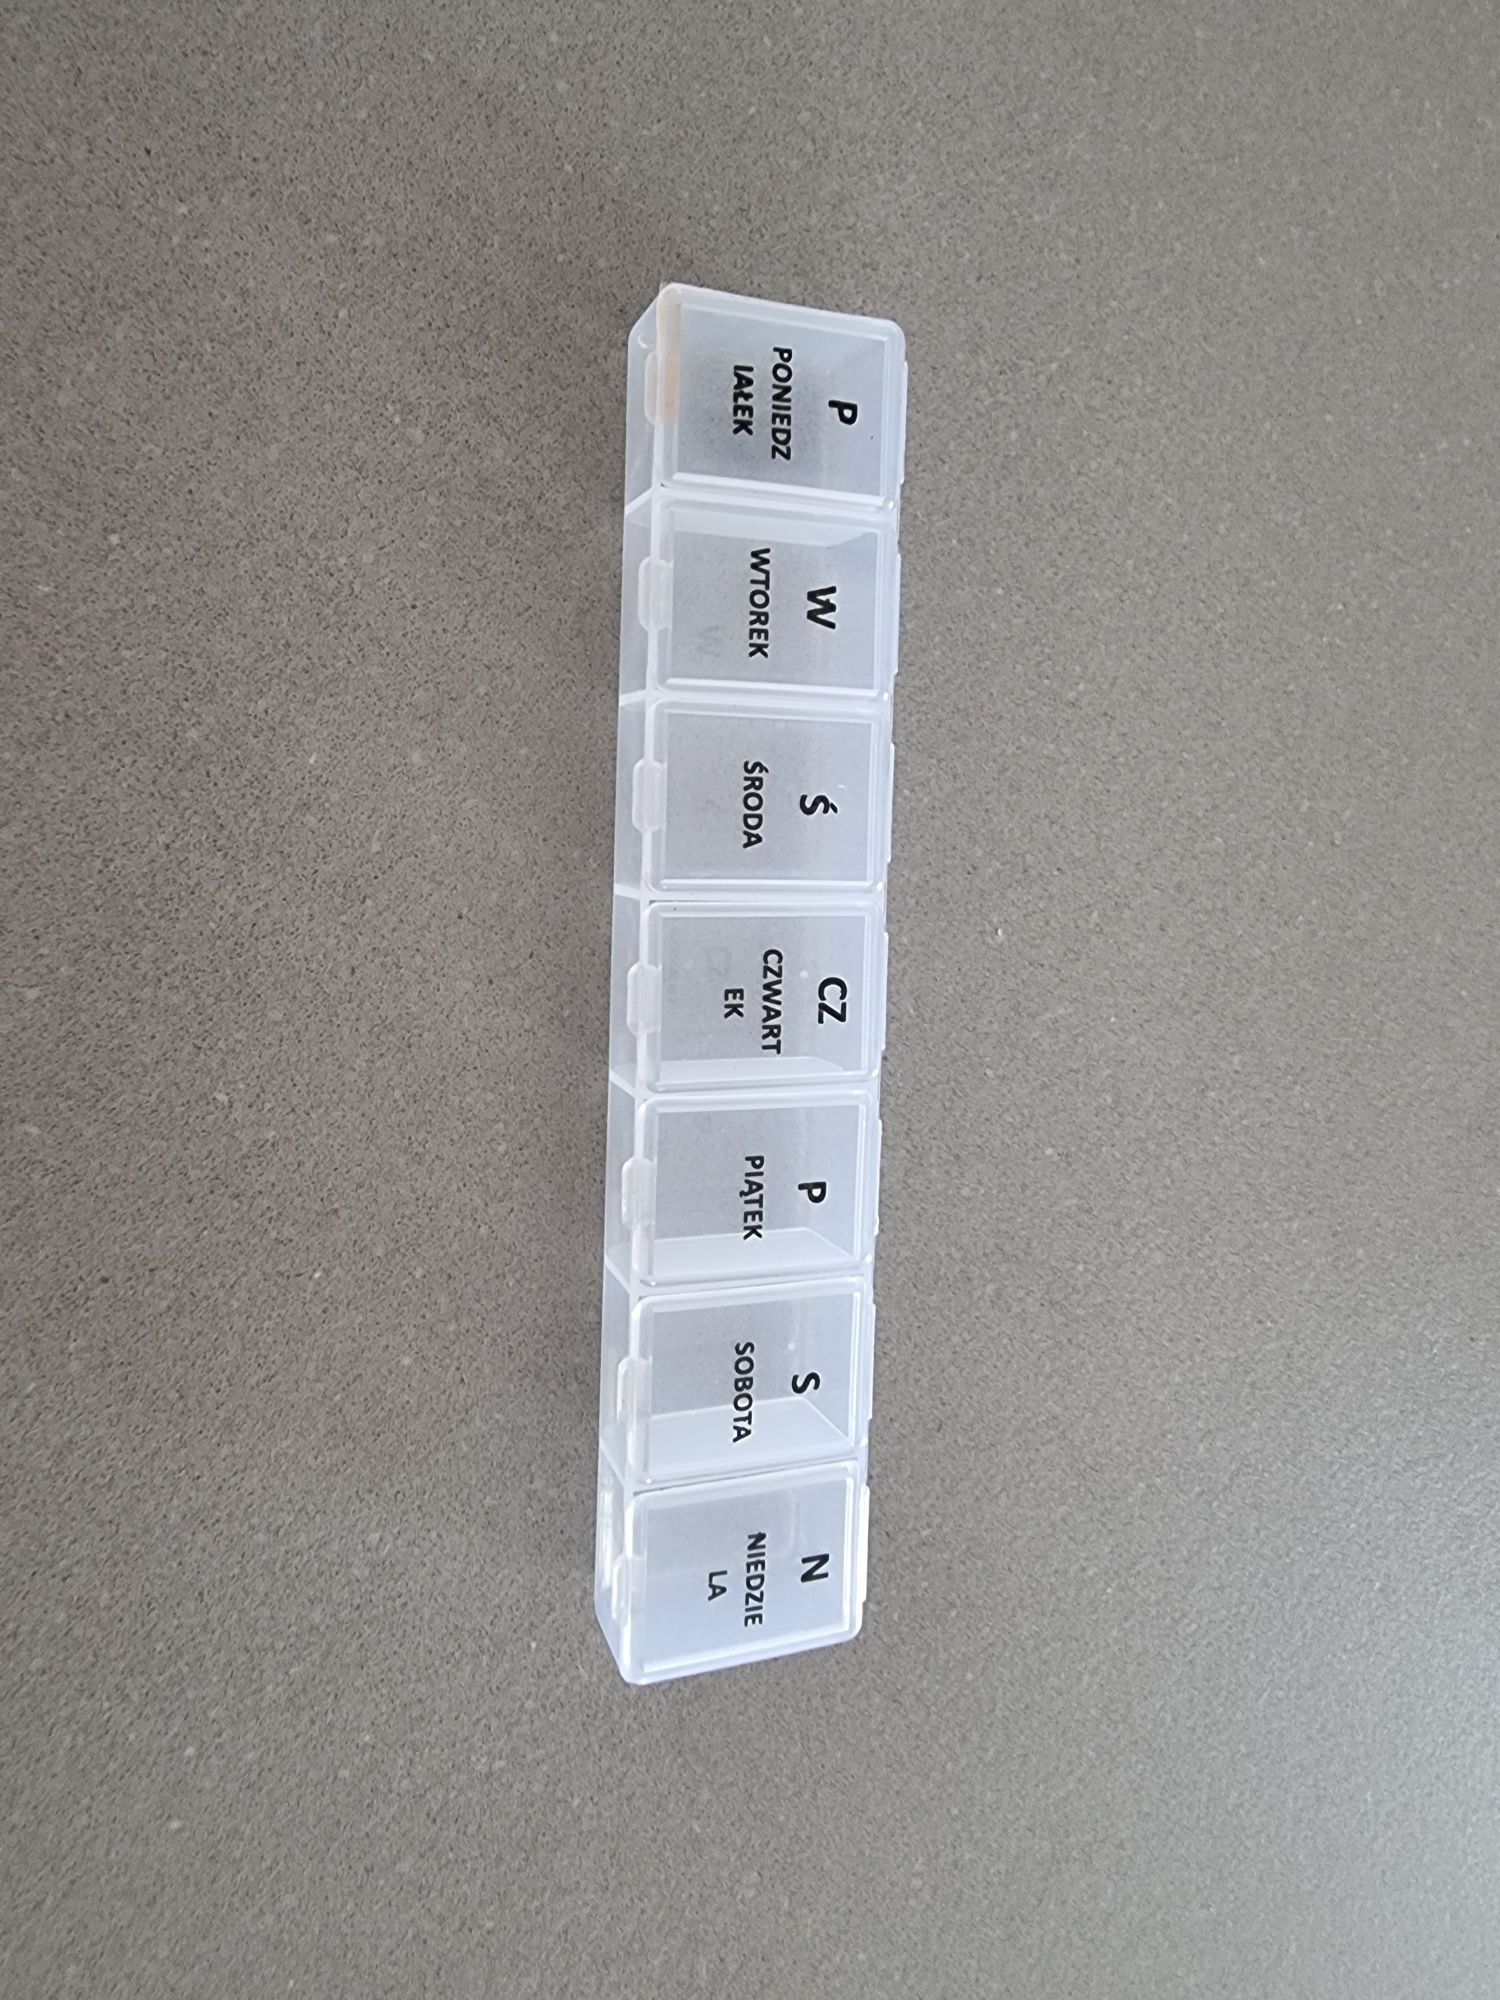 Kasetka pojemnik na leki z przegródkami na 7 dni pojemniki na leki